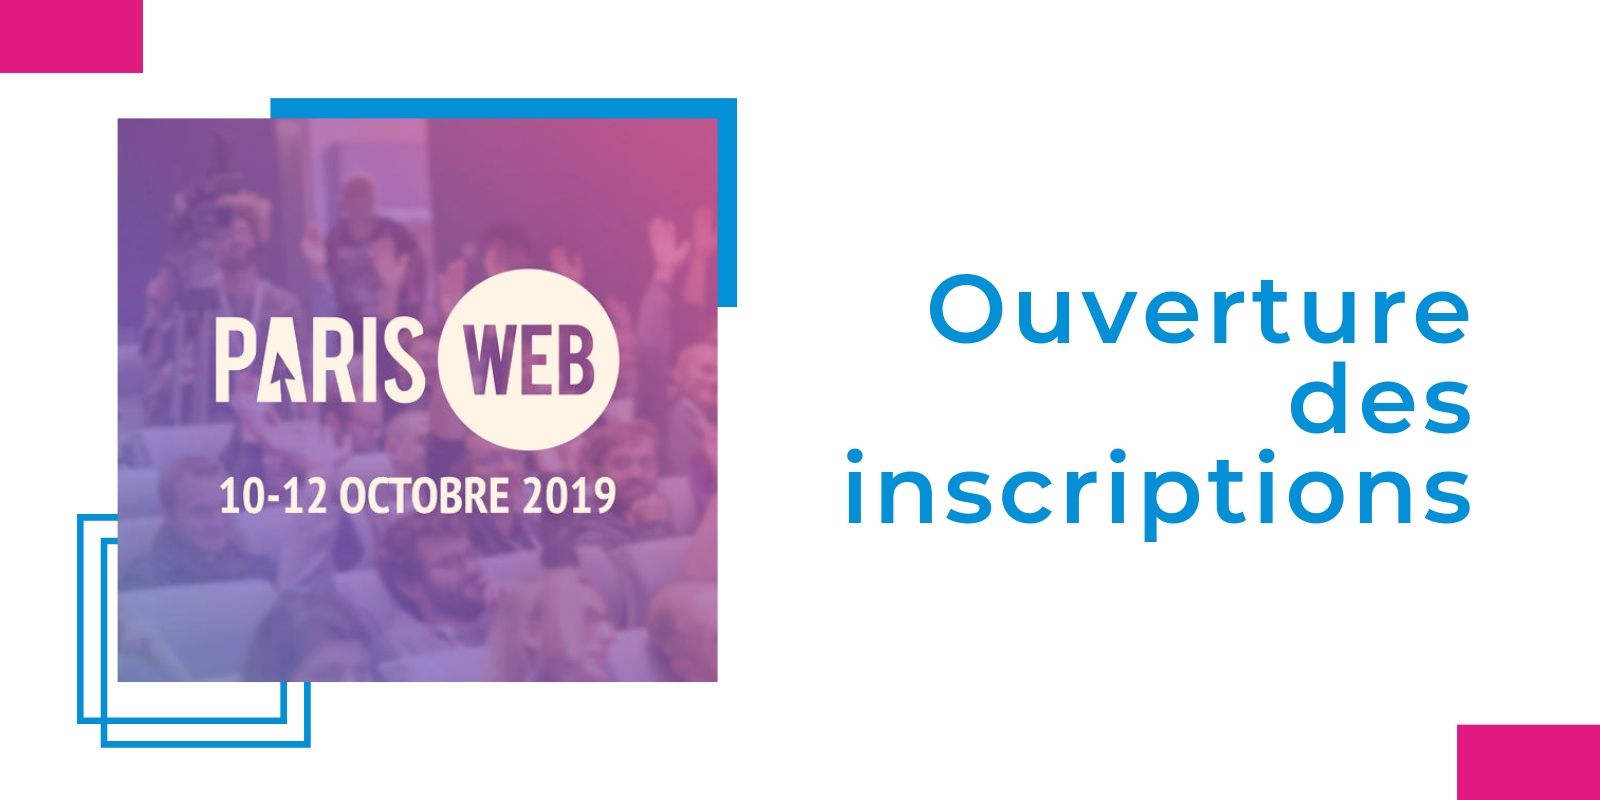 Paris Web 2019 : les inscriptions sont ouvertes